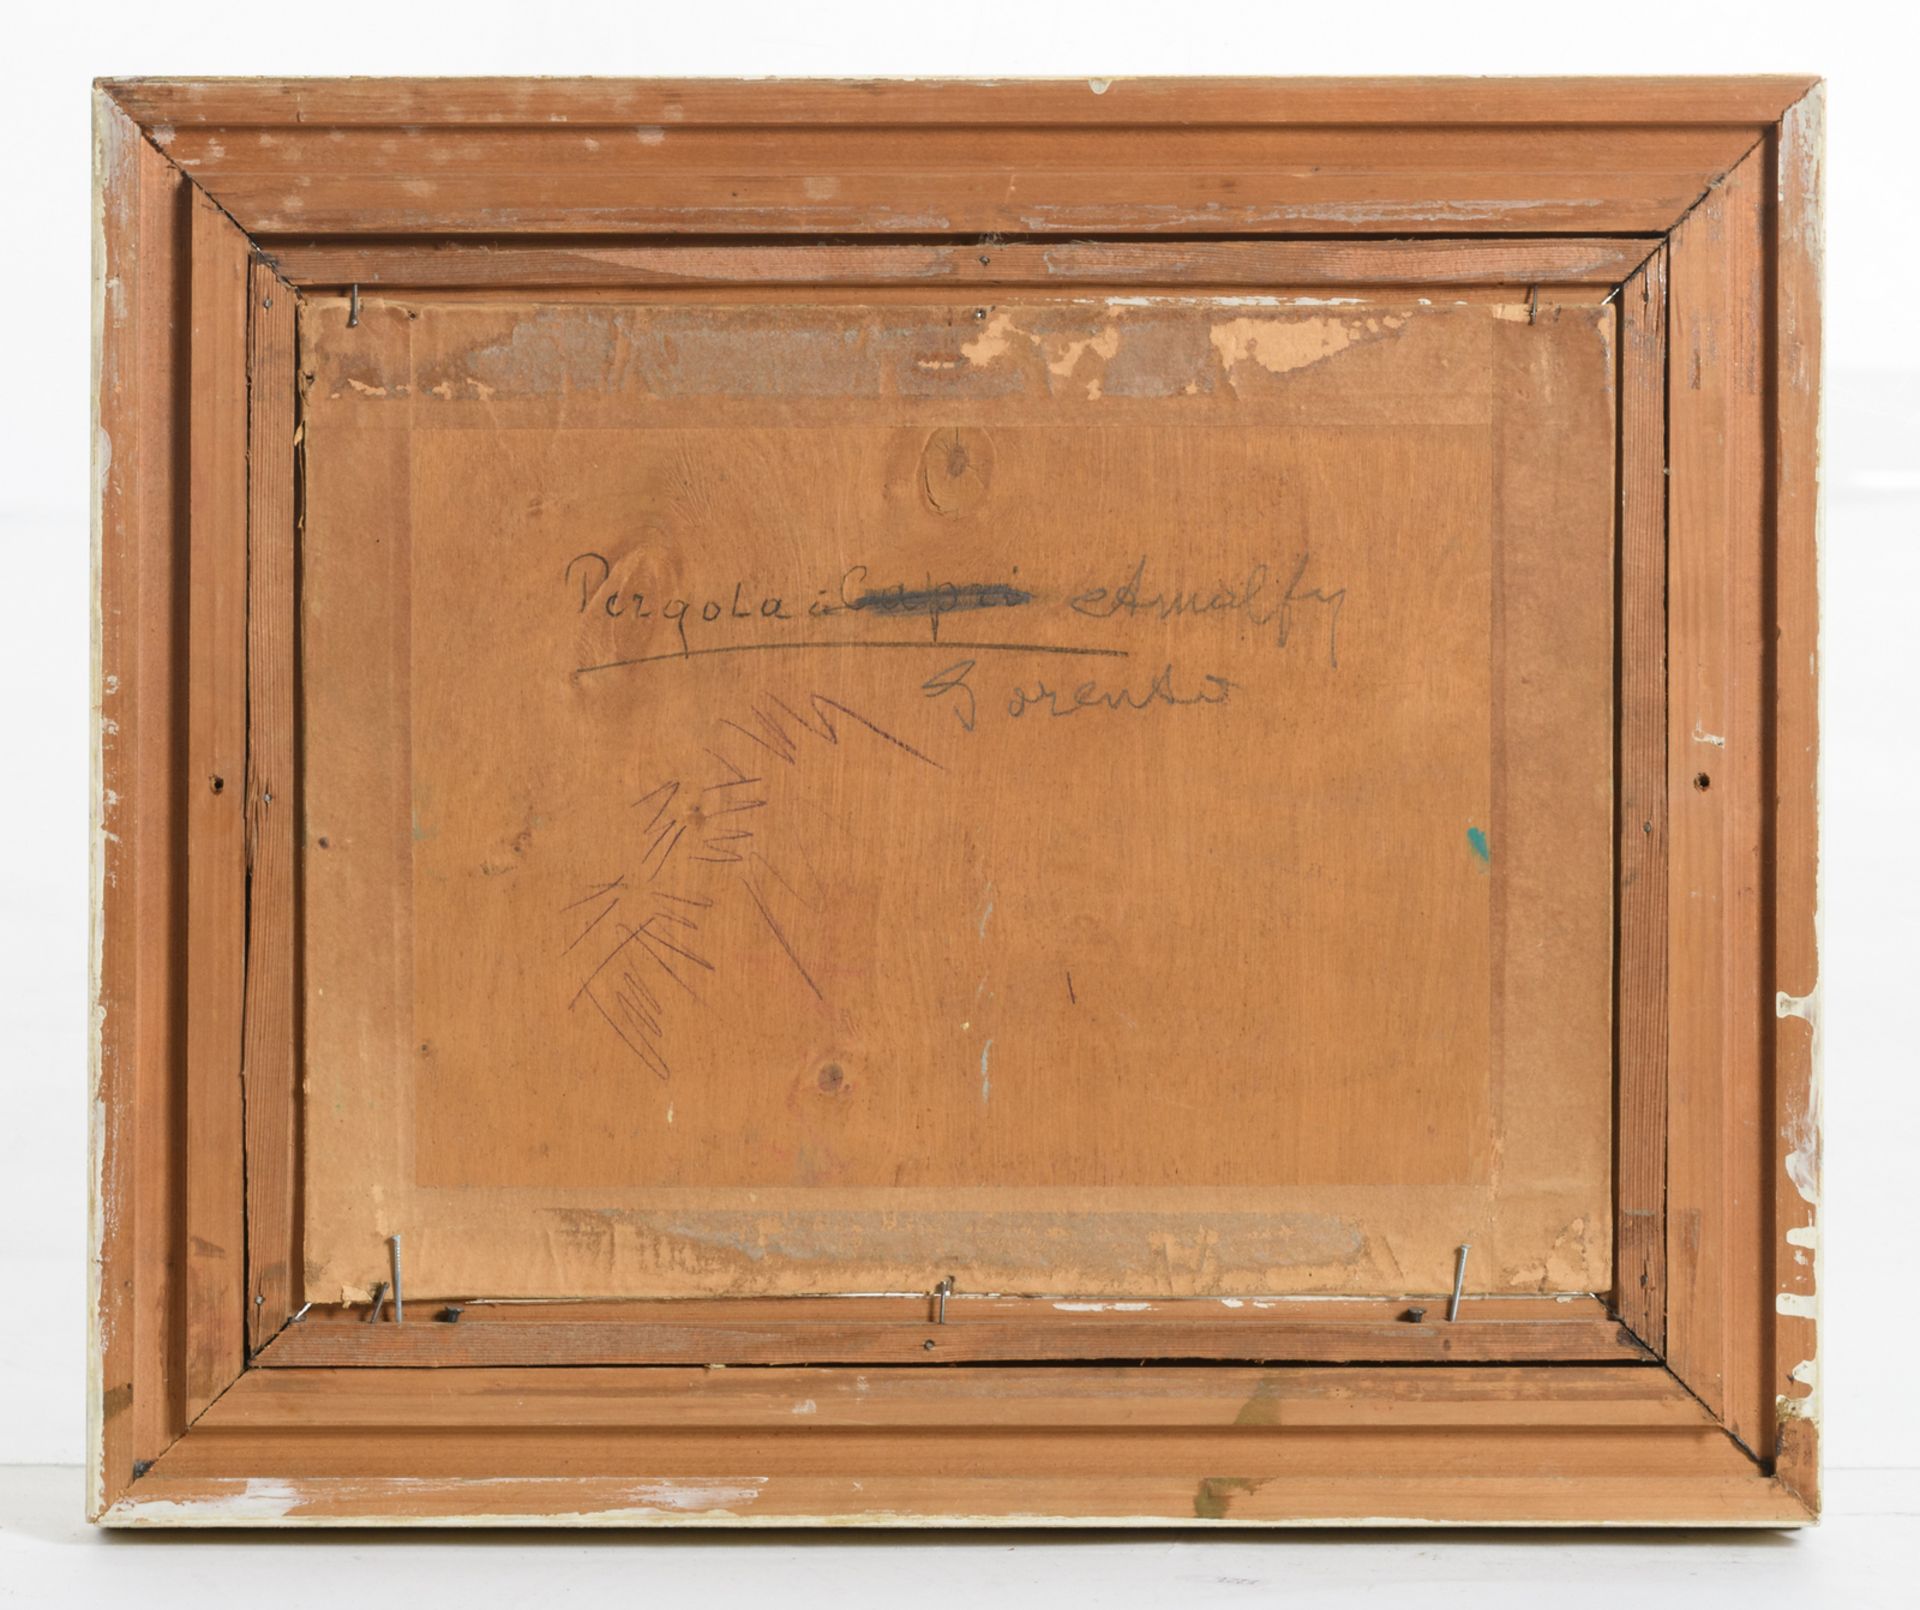 Verbrugghe Ch., 'Pergola in Sorento Amalfi', oil on plywood, 25,5 x 33,5 cm - Bild 3 aus 4